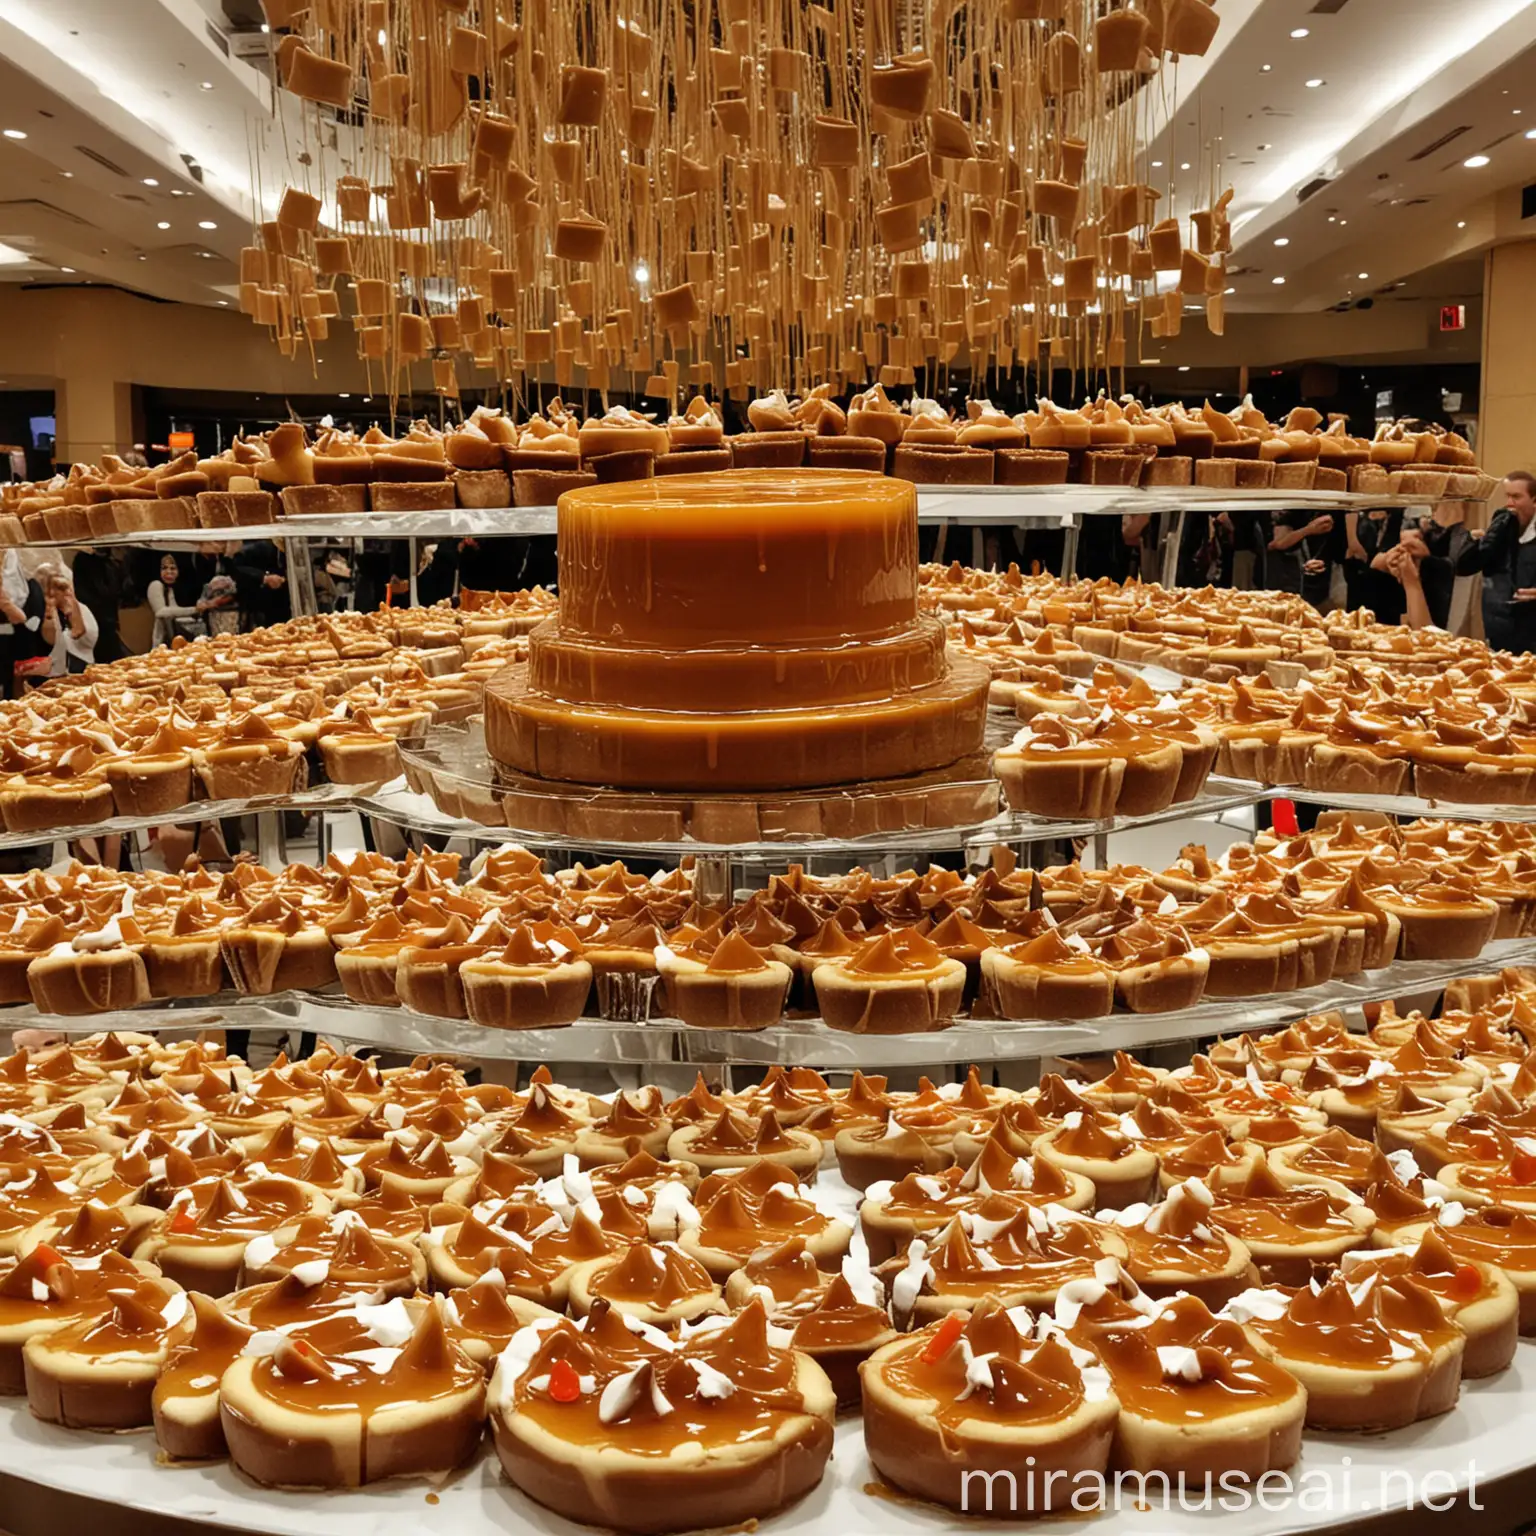 Giant Caramel Flan Centerpiece at Lavish Buffet Display